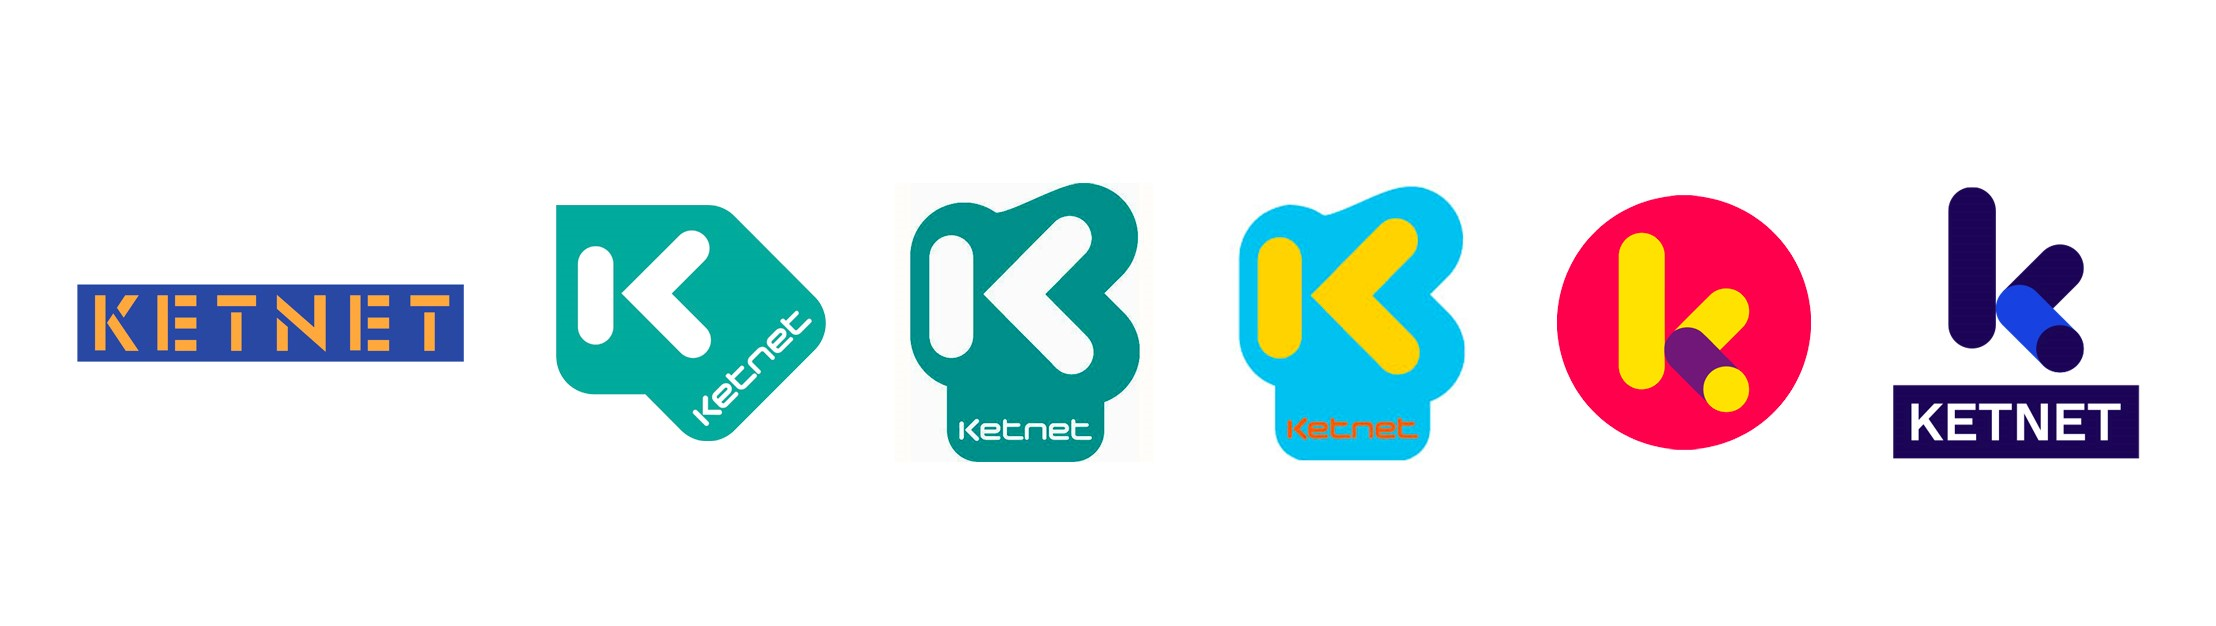 (c) - VRT - Logo's Ketnet 1997- 2021